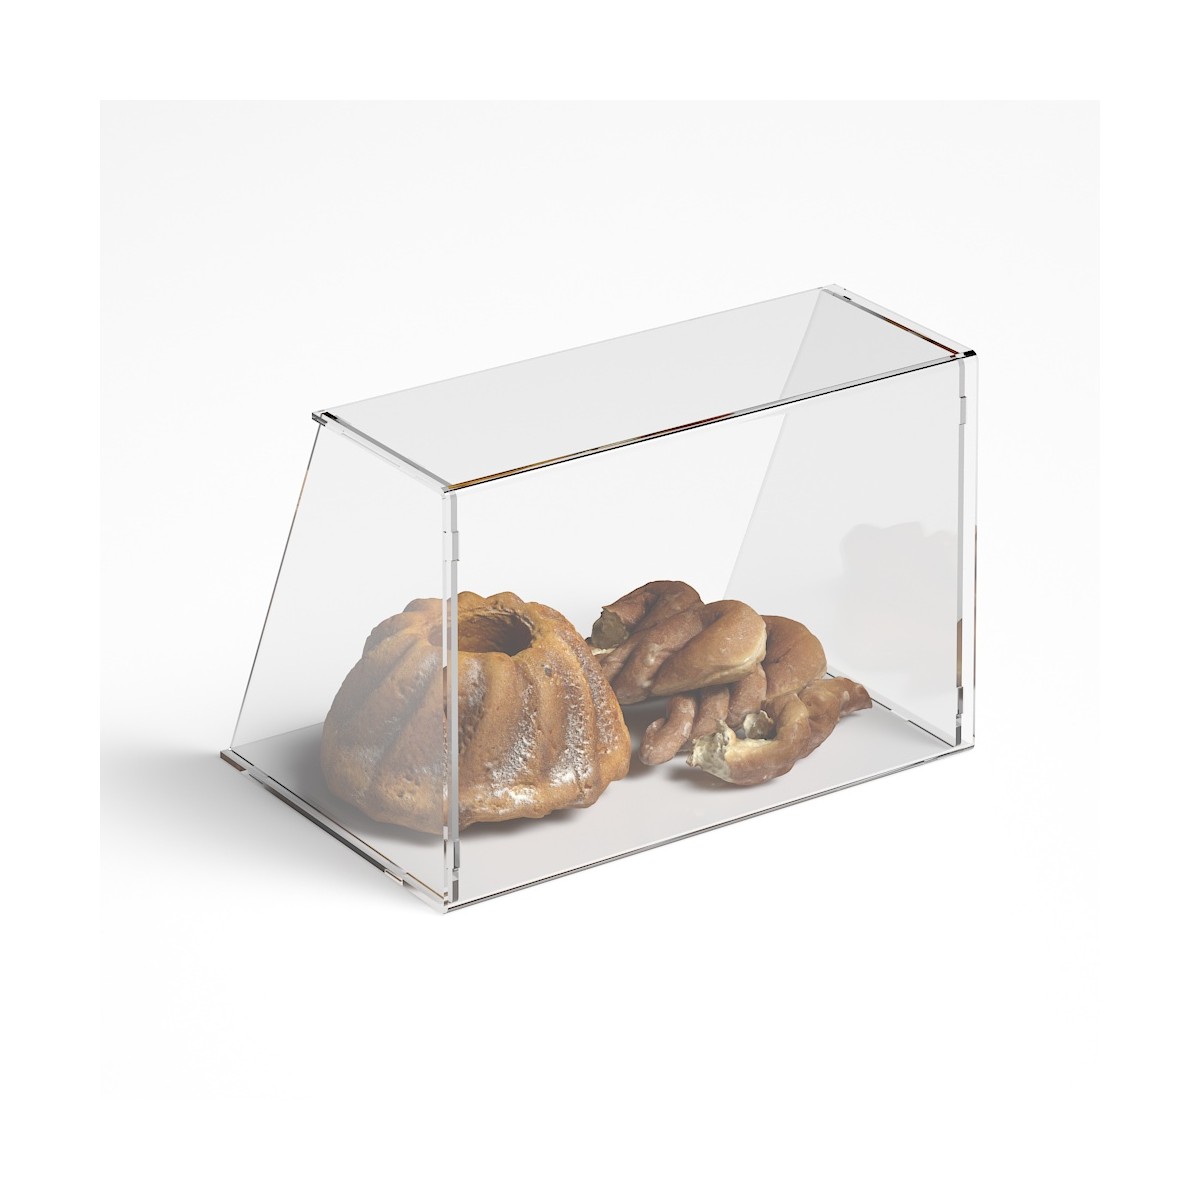 Parafiato parasputi in plexiglass trasparente per alimenti con pannelli  laterali